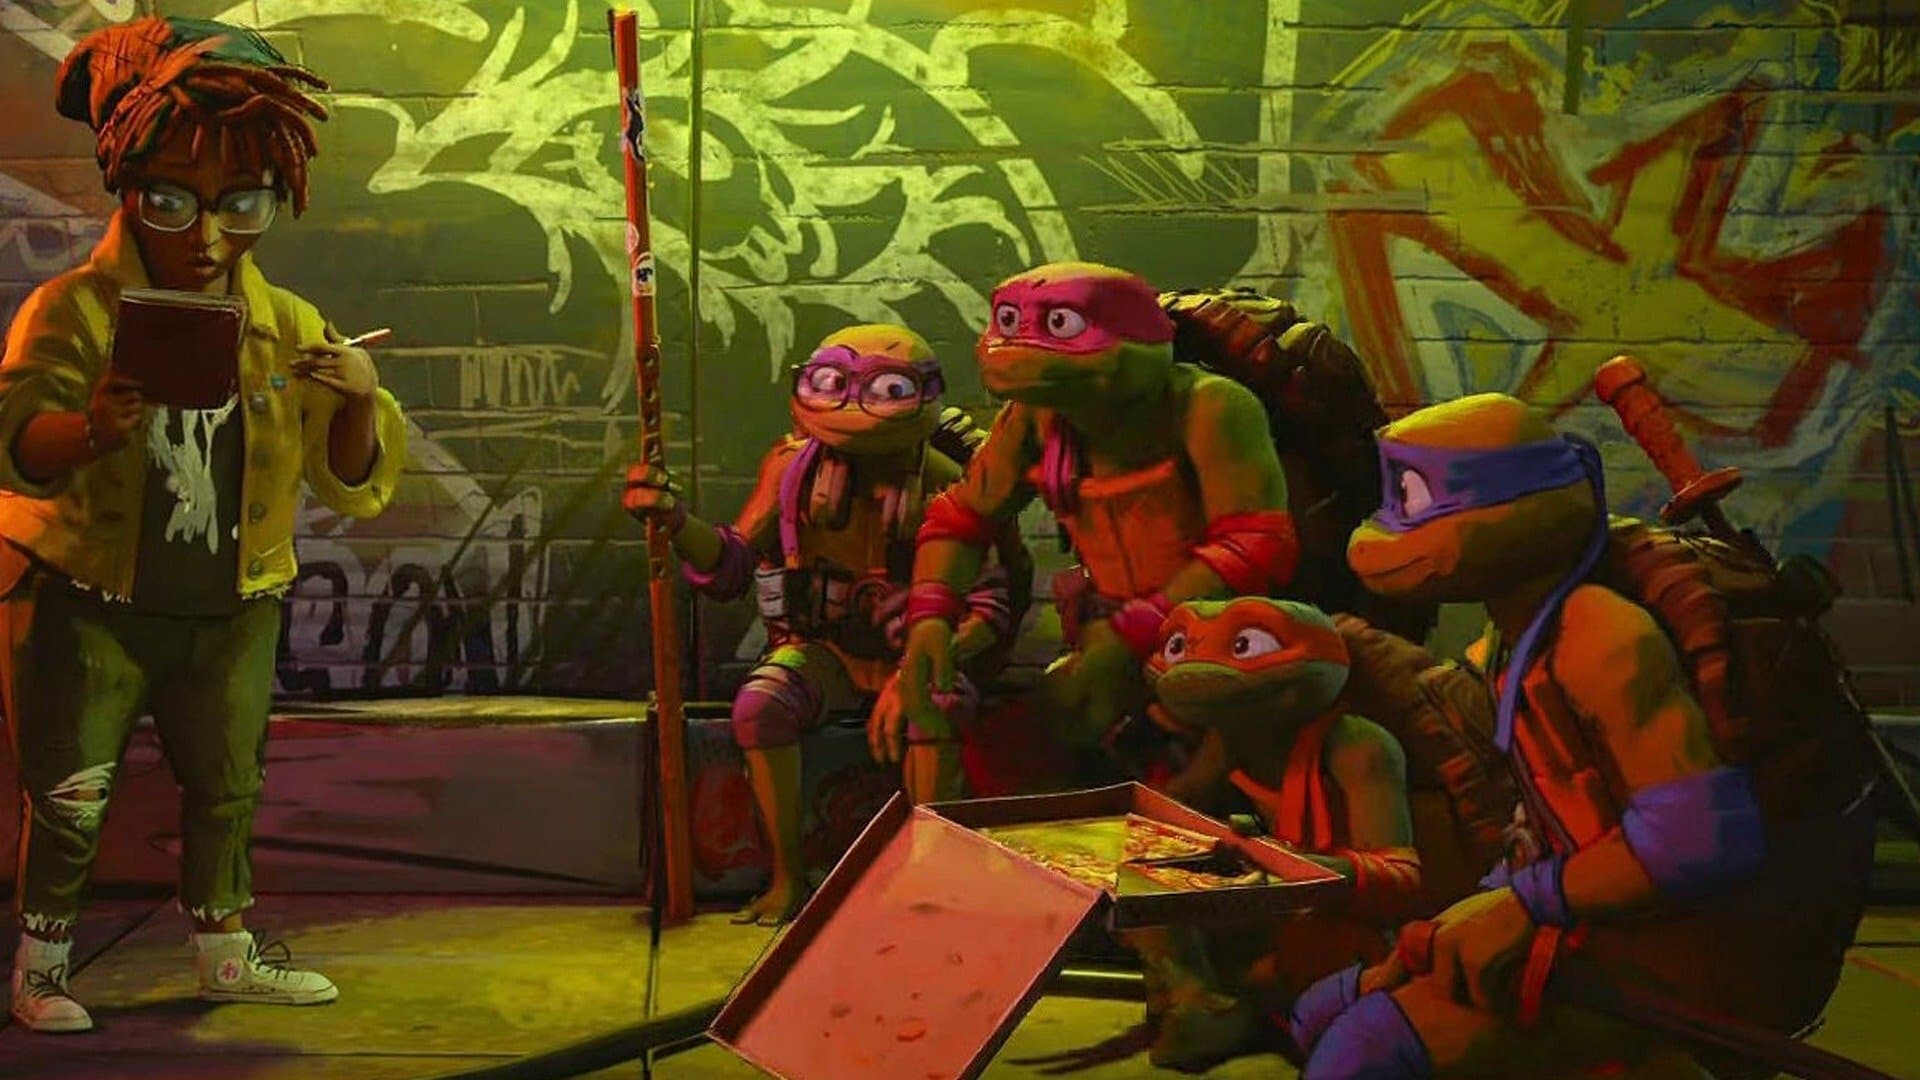 Teenage Mutant Ninja Turtles: Mutant Mayhem Character Posters Released